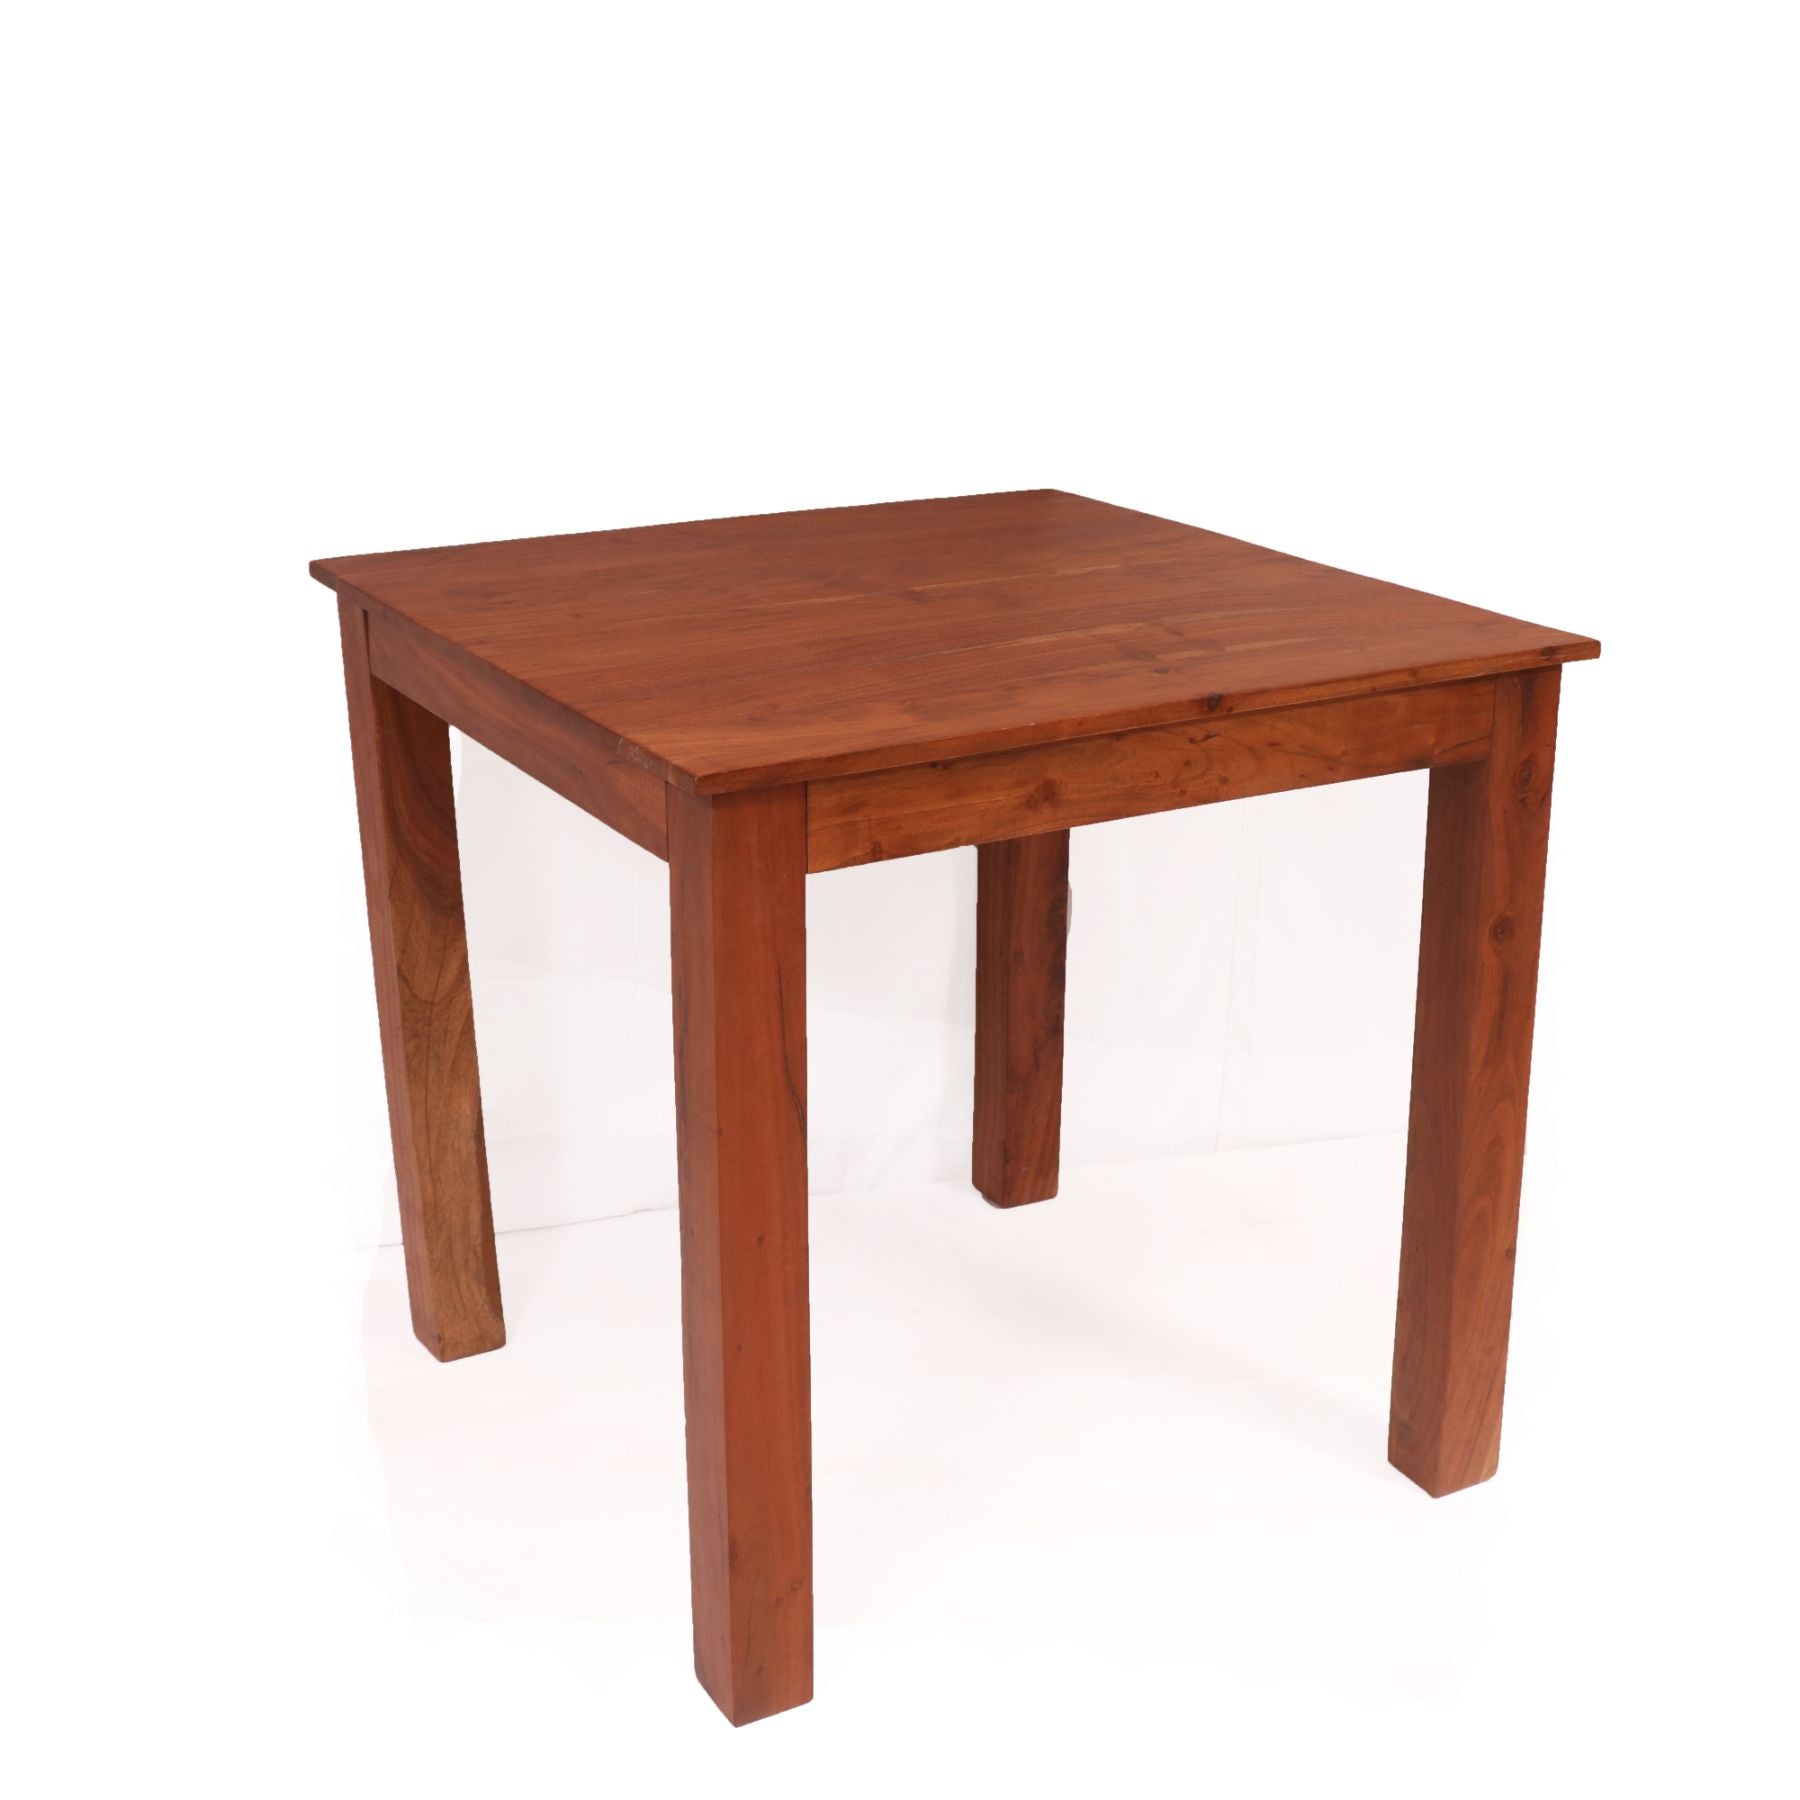 Simple Teak Wood Table Dining Table